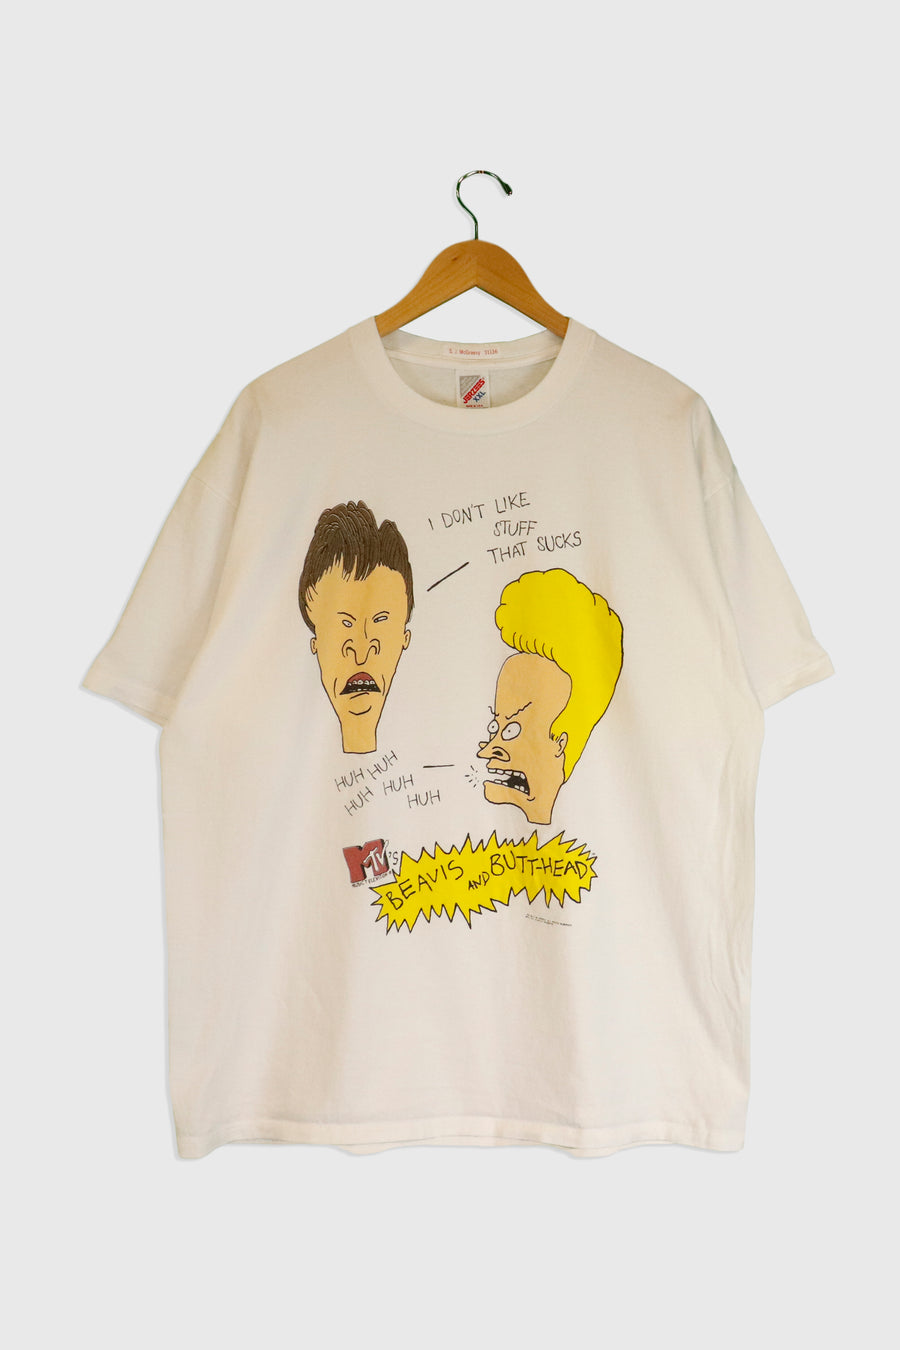 Vintage 1993 Beavis And Butt-Head T Shirt Sz 2XL